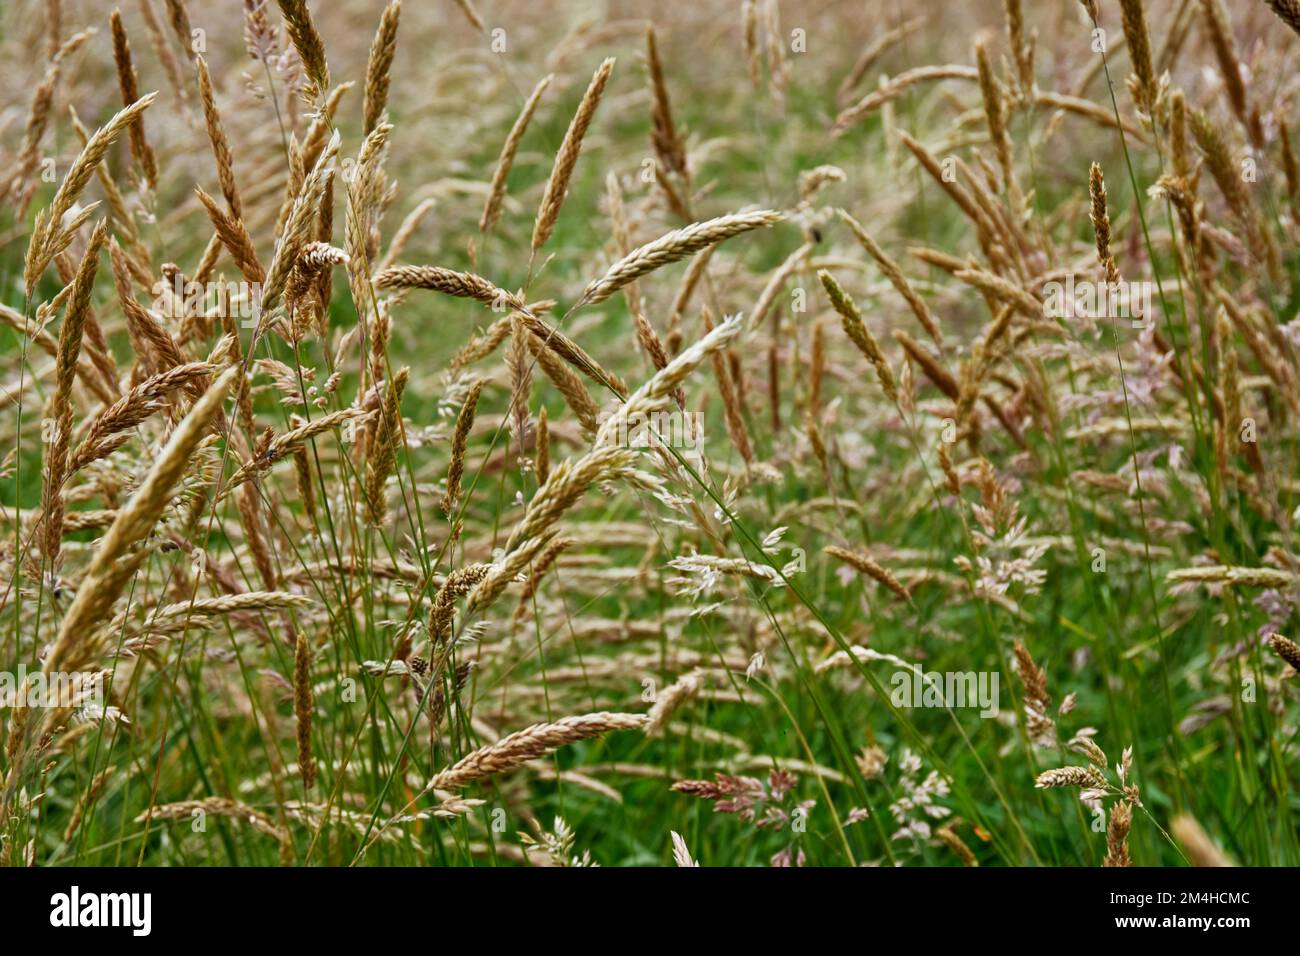 Flowering grasses. Stock Photo